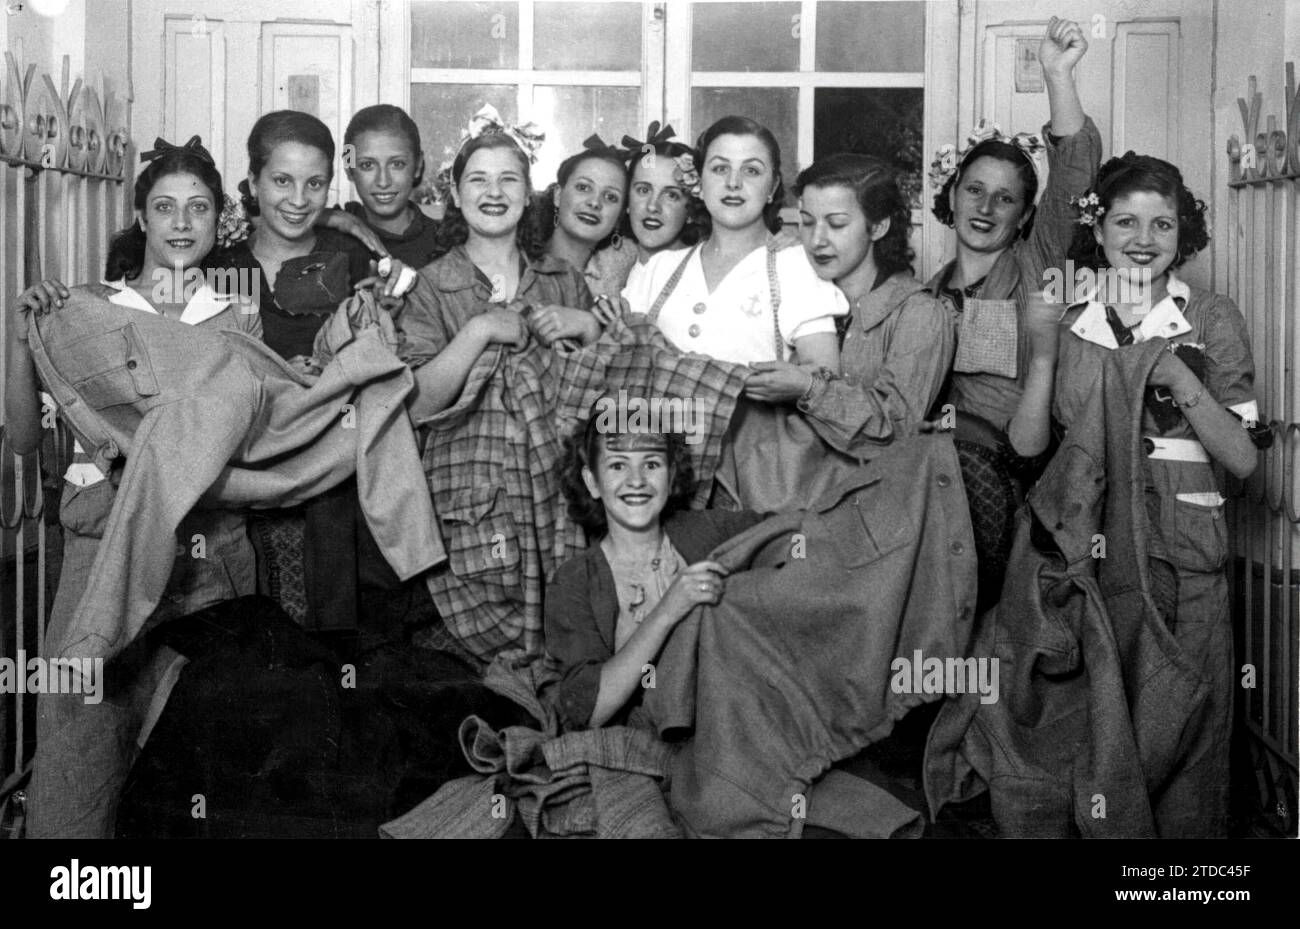 09/30/1936. Frauen aus der Werkstatt Juventudes Radio 10, die kostenlos warme Jacken für die Milizen herstellten und ihre fertigen Kleidungsstücke zeigten, bevor sie an die Front geschickt wurden. Quelle: Album / Archivo ABC / Cervera Stockfoto